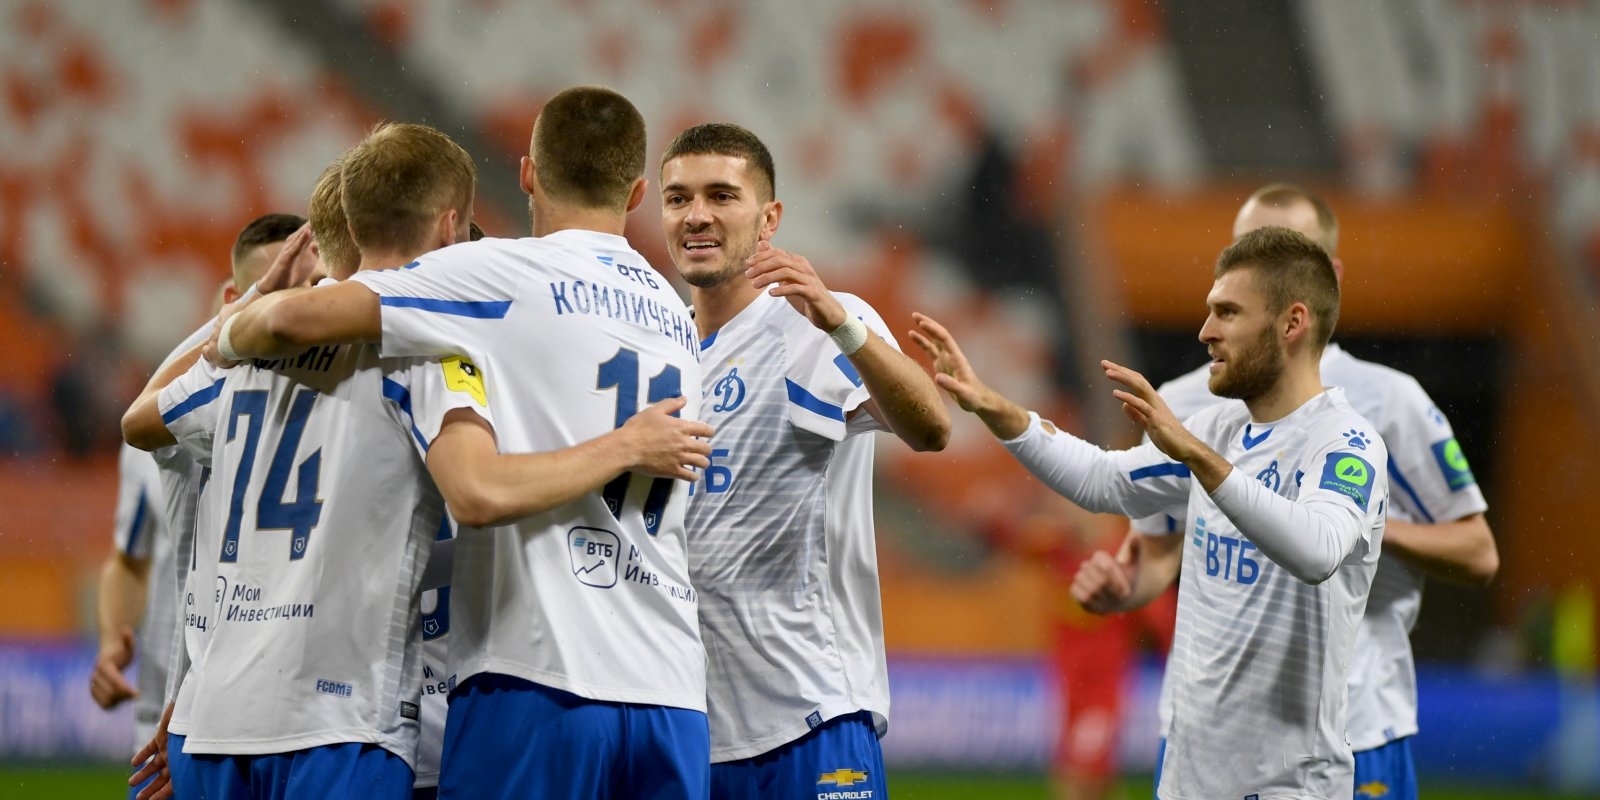 Динамо Москва се изкачи на 4 о място в руската Премиер